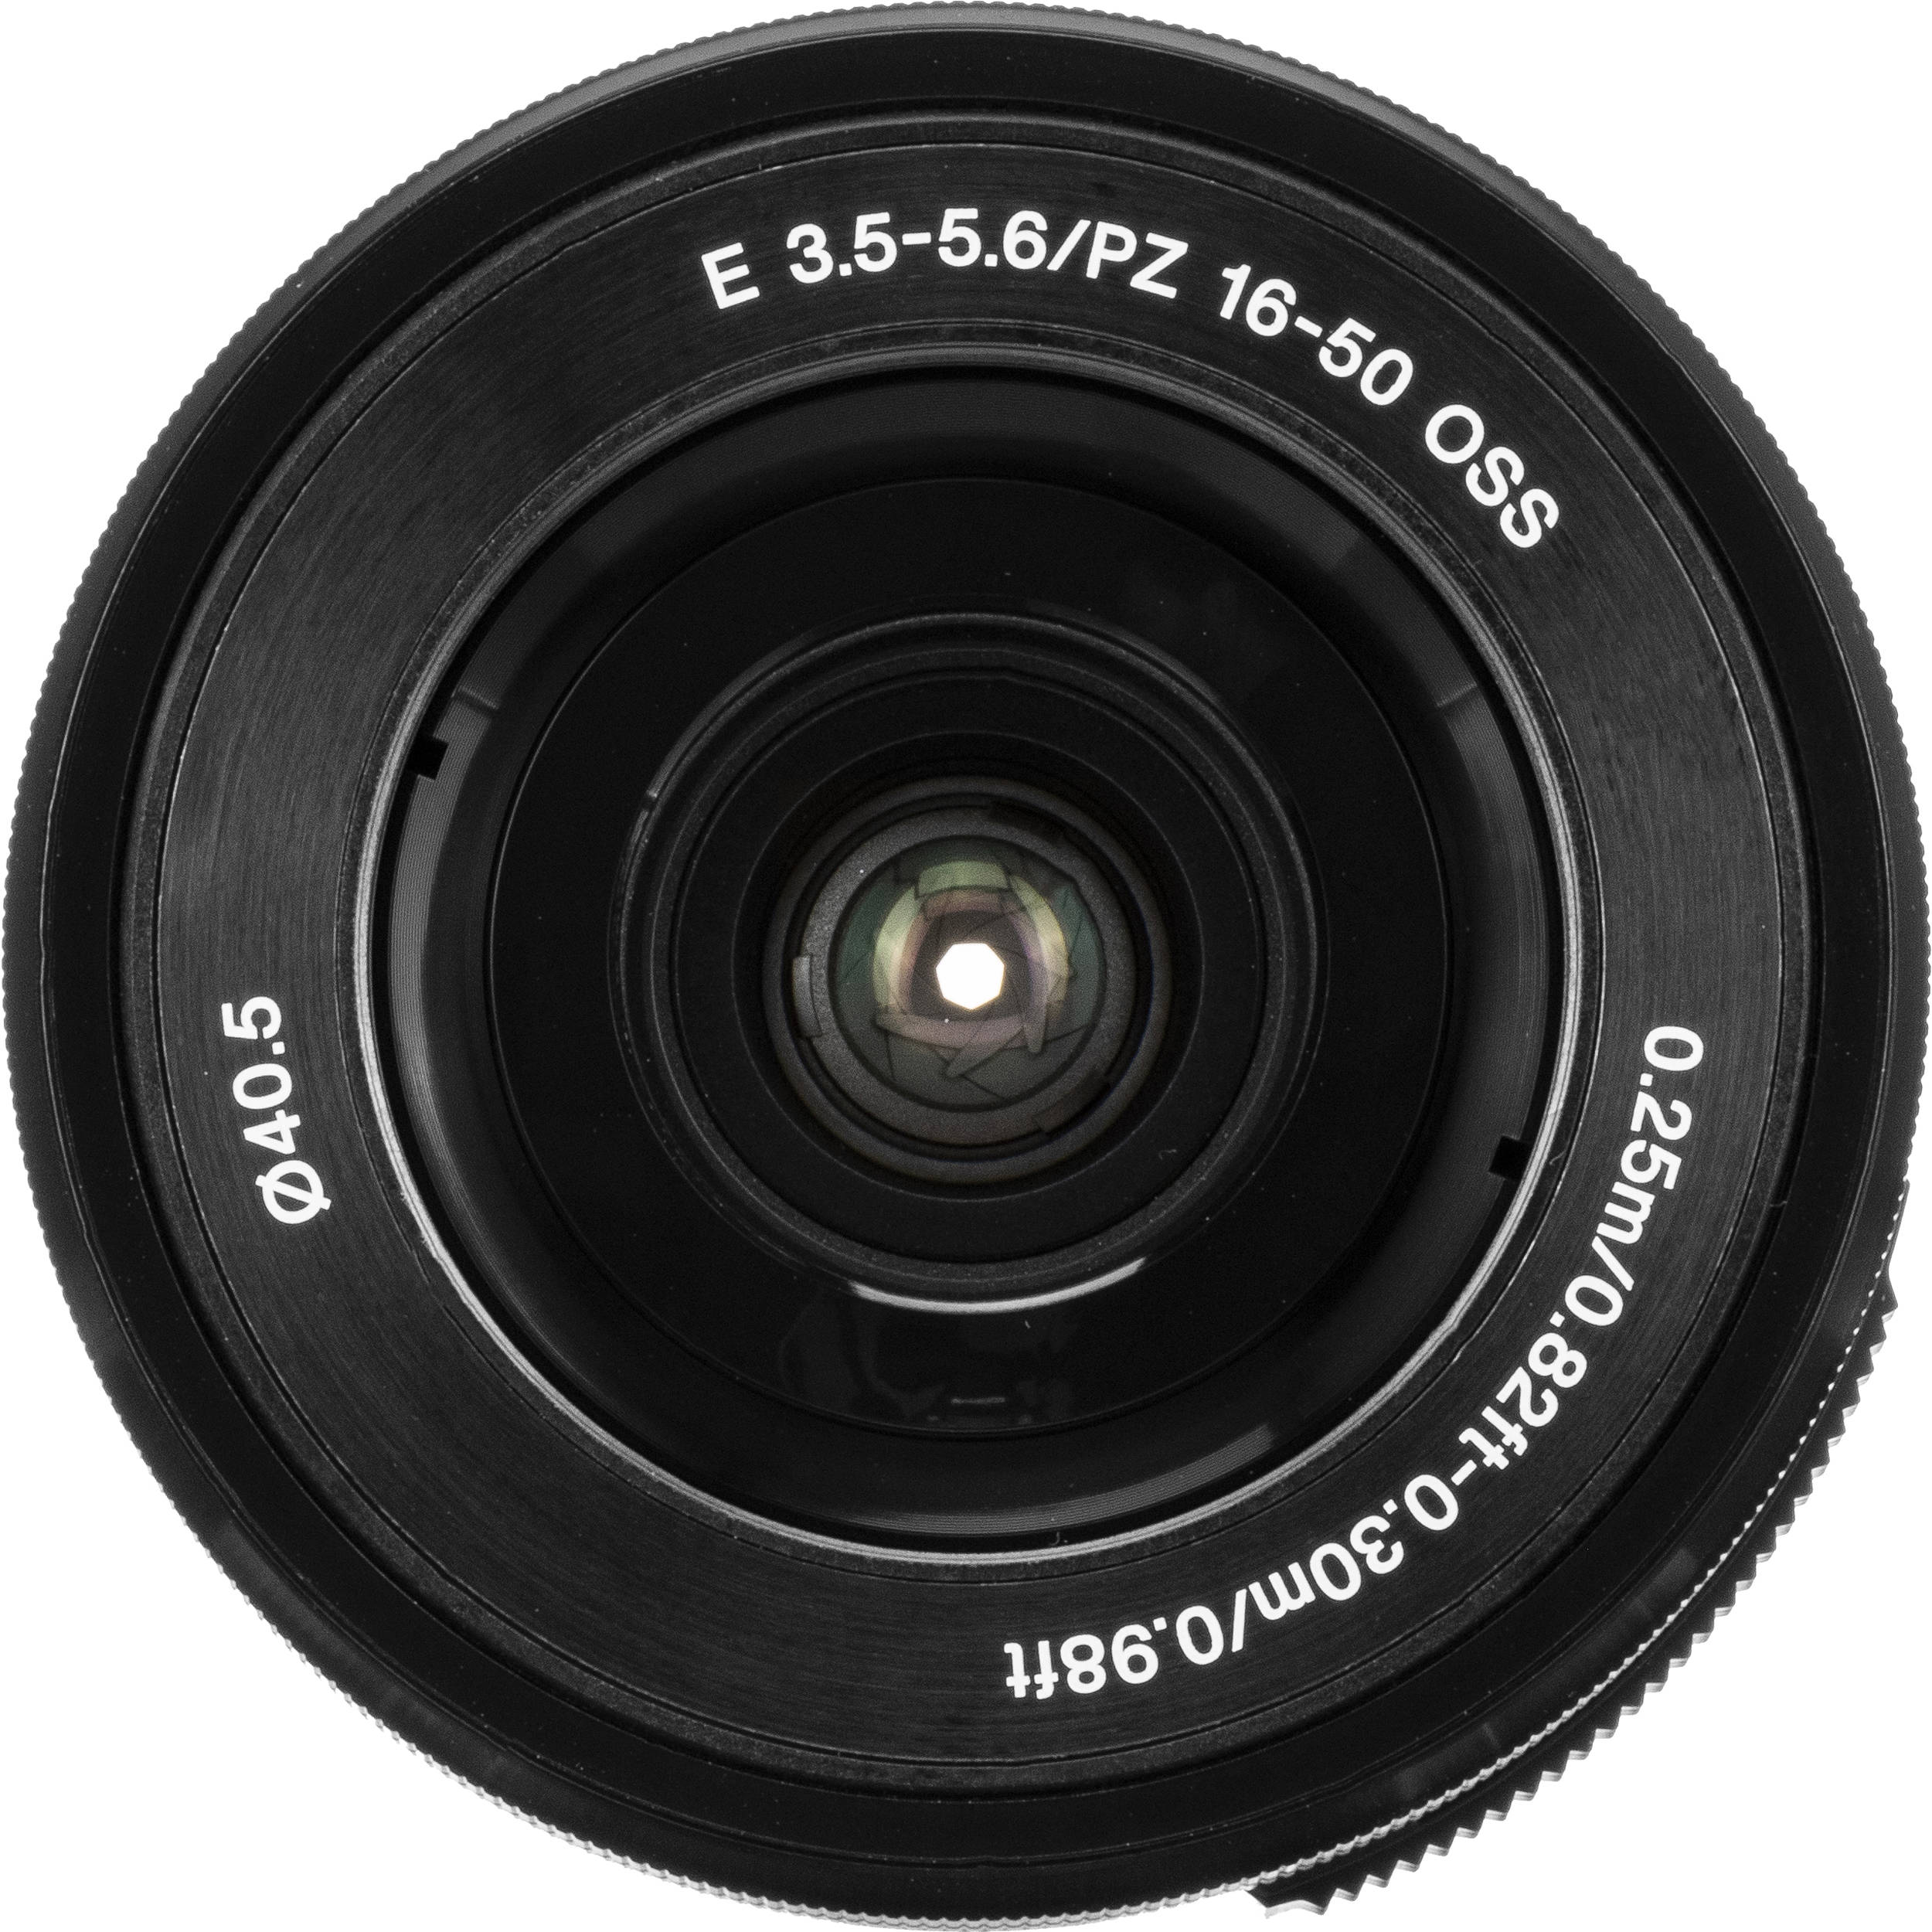 sony a350 lens kit